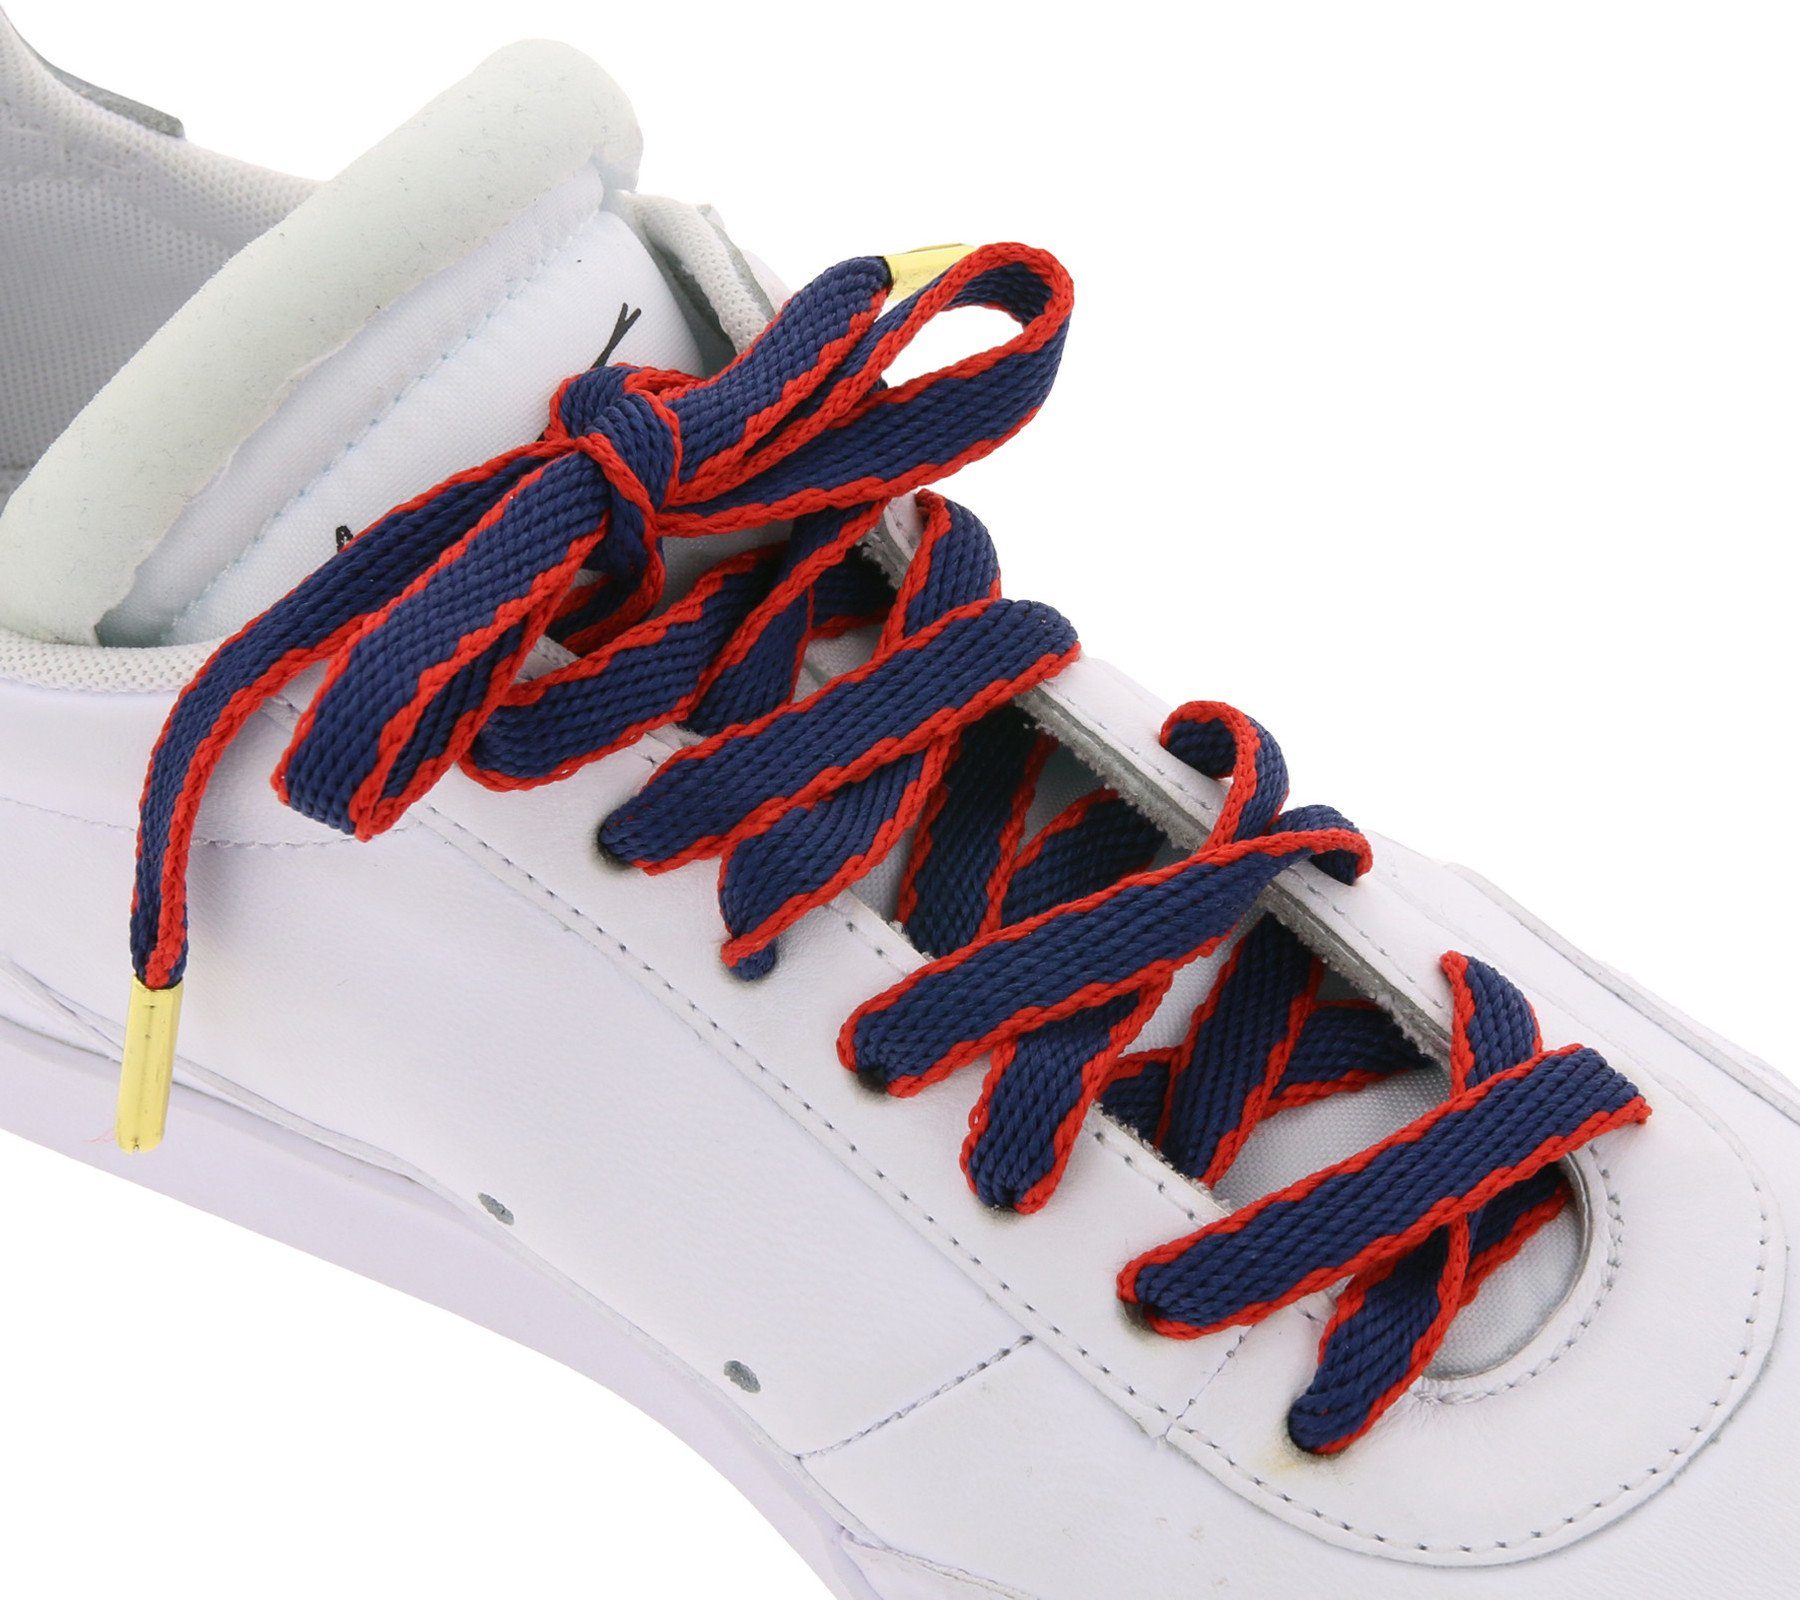 Tubelaces Schnürsenkel TubeLaces Schuhe Schnürsenkel top angesagte Schuhbänder Schnürbänder Navy/Rot